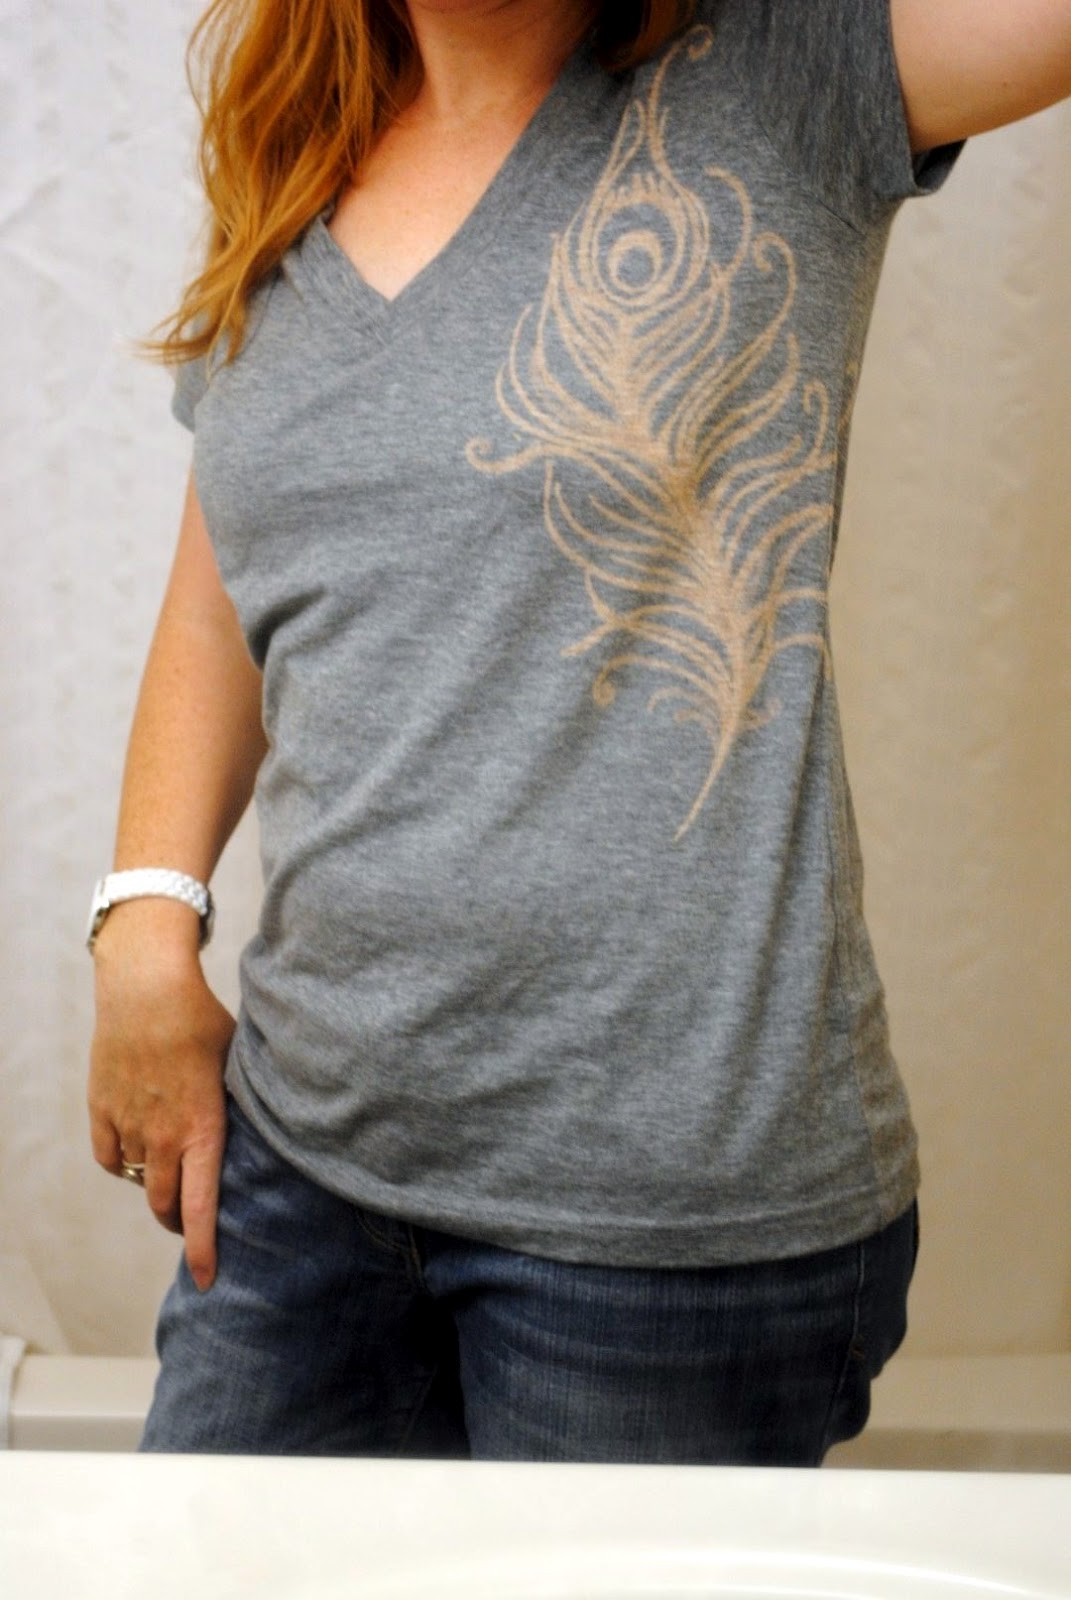 Stunning T-Shirt Design Using a Bleach Pen!